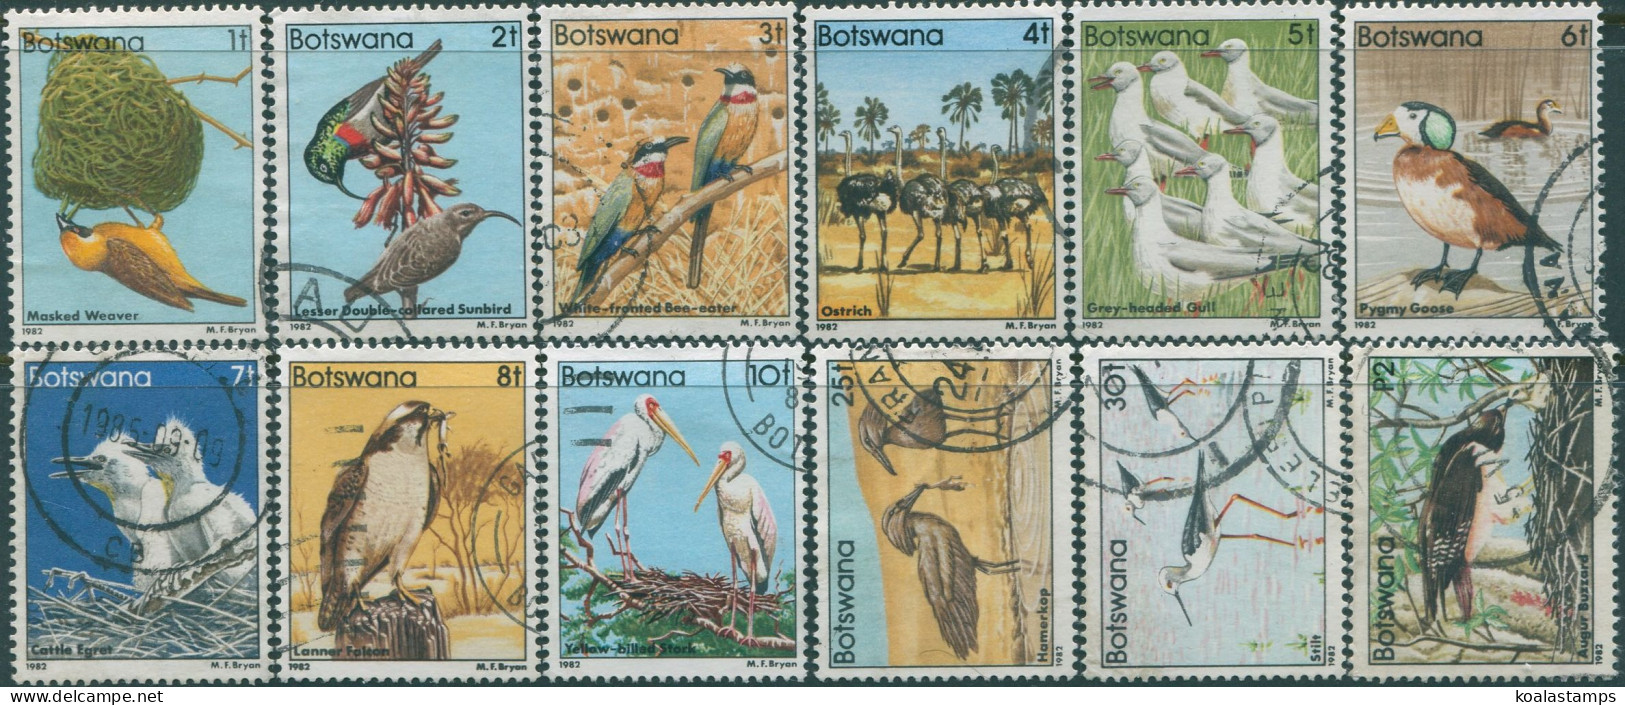 Botswana 1982 SG515-532 Birds (10) FU - Botswana (1966-...)